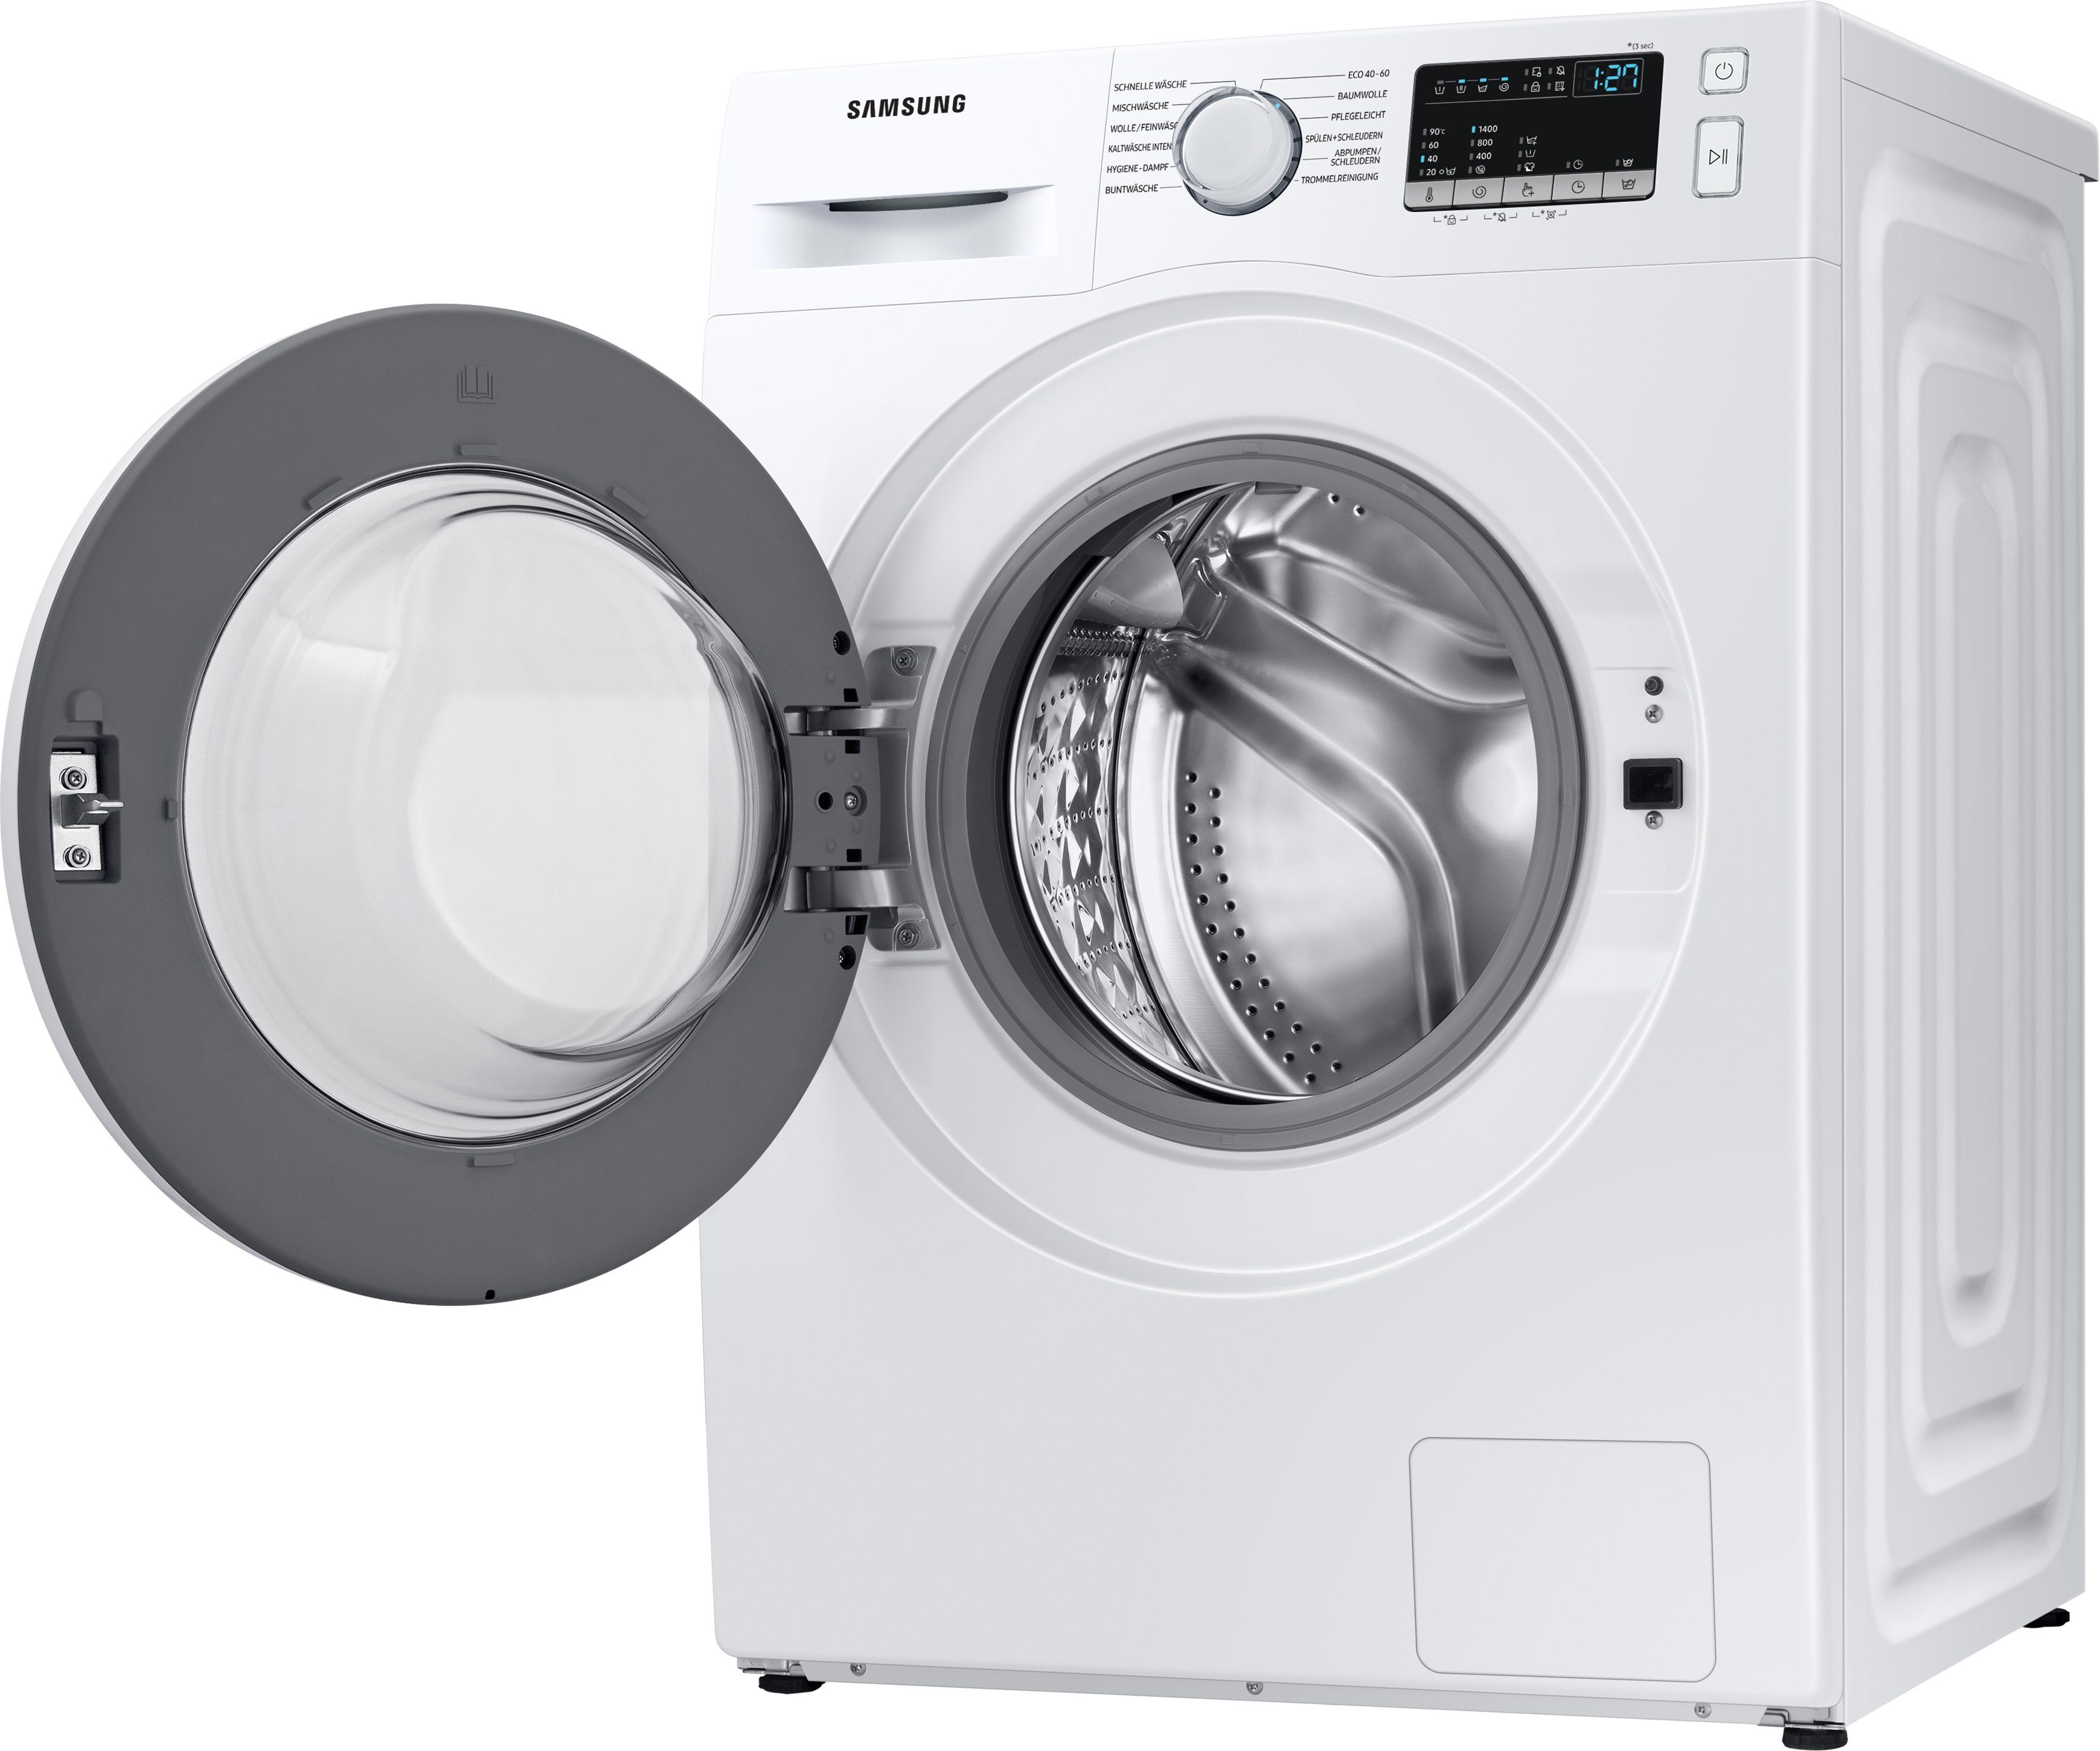 kg, Waschmaschine 1400 WW90T4048EE, 9 U/min Samsung